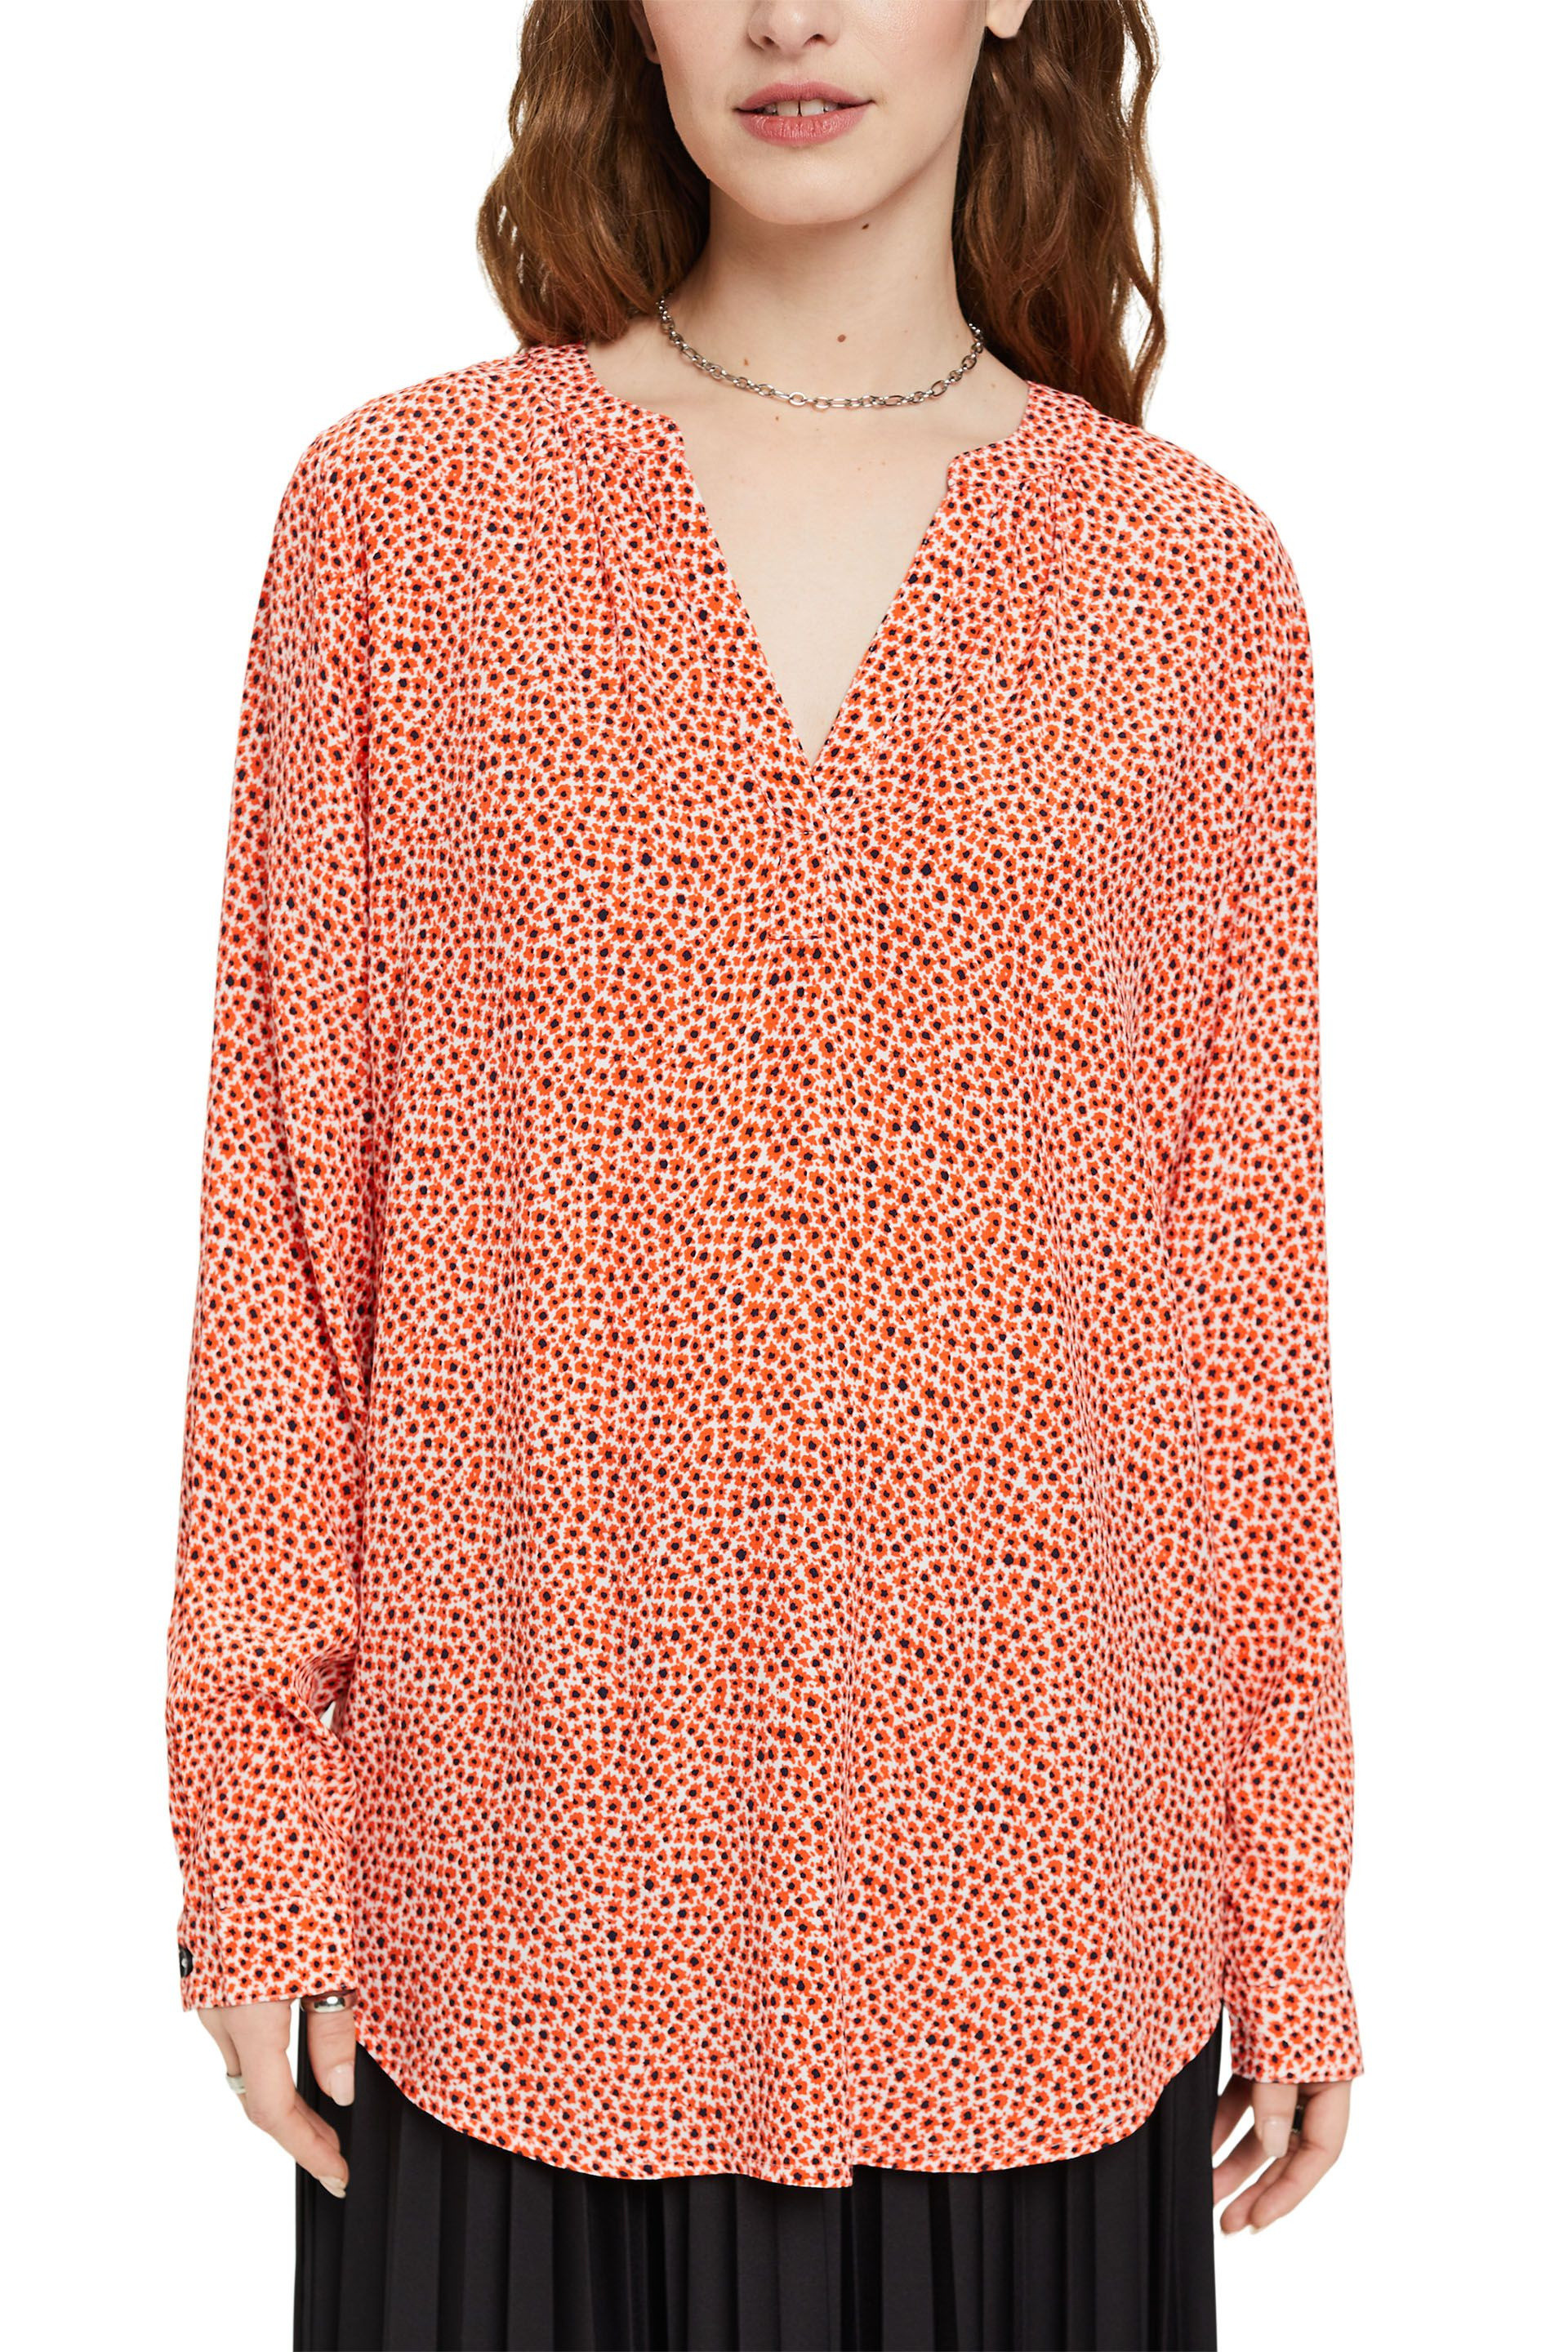 Esprit - Floral V-neck shirt, Orange, large image number 2